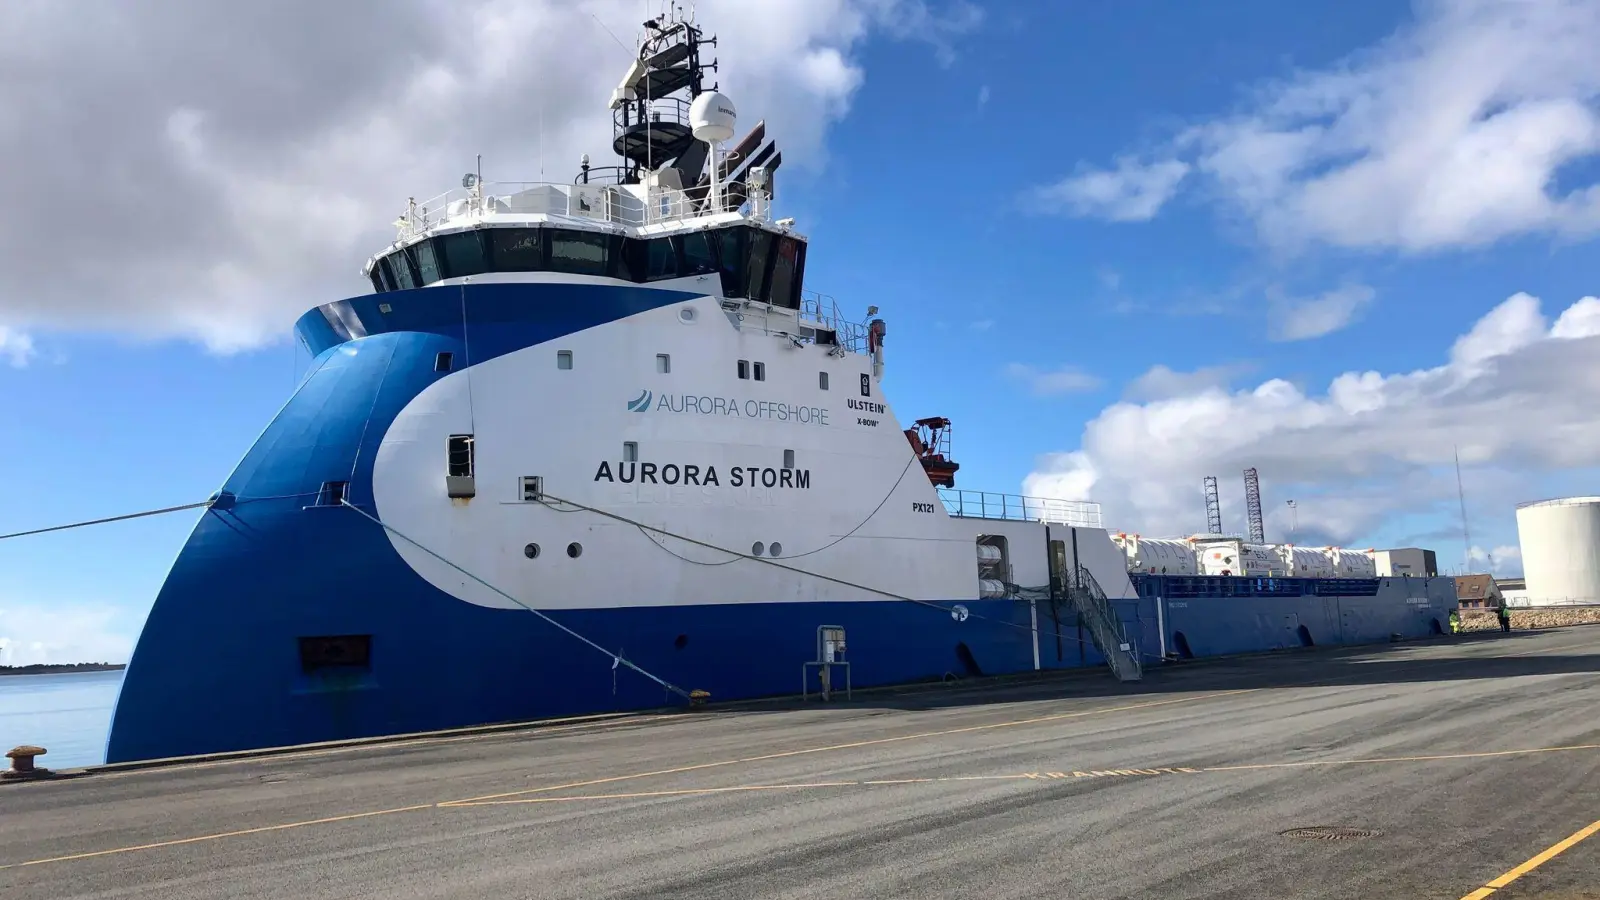 Die „Aurora Storm” liegt im Hafen. Das Schiff transportiert CO2 zur Offshore-Plattform Nini-West. Von dort wird es in das ausgeförderte Ölfeld eingespeist. (Foto: Steffen Trumpf/dpa)